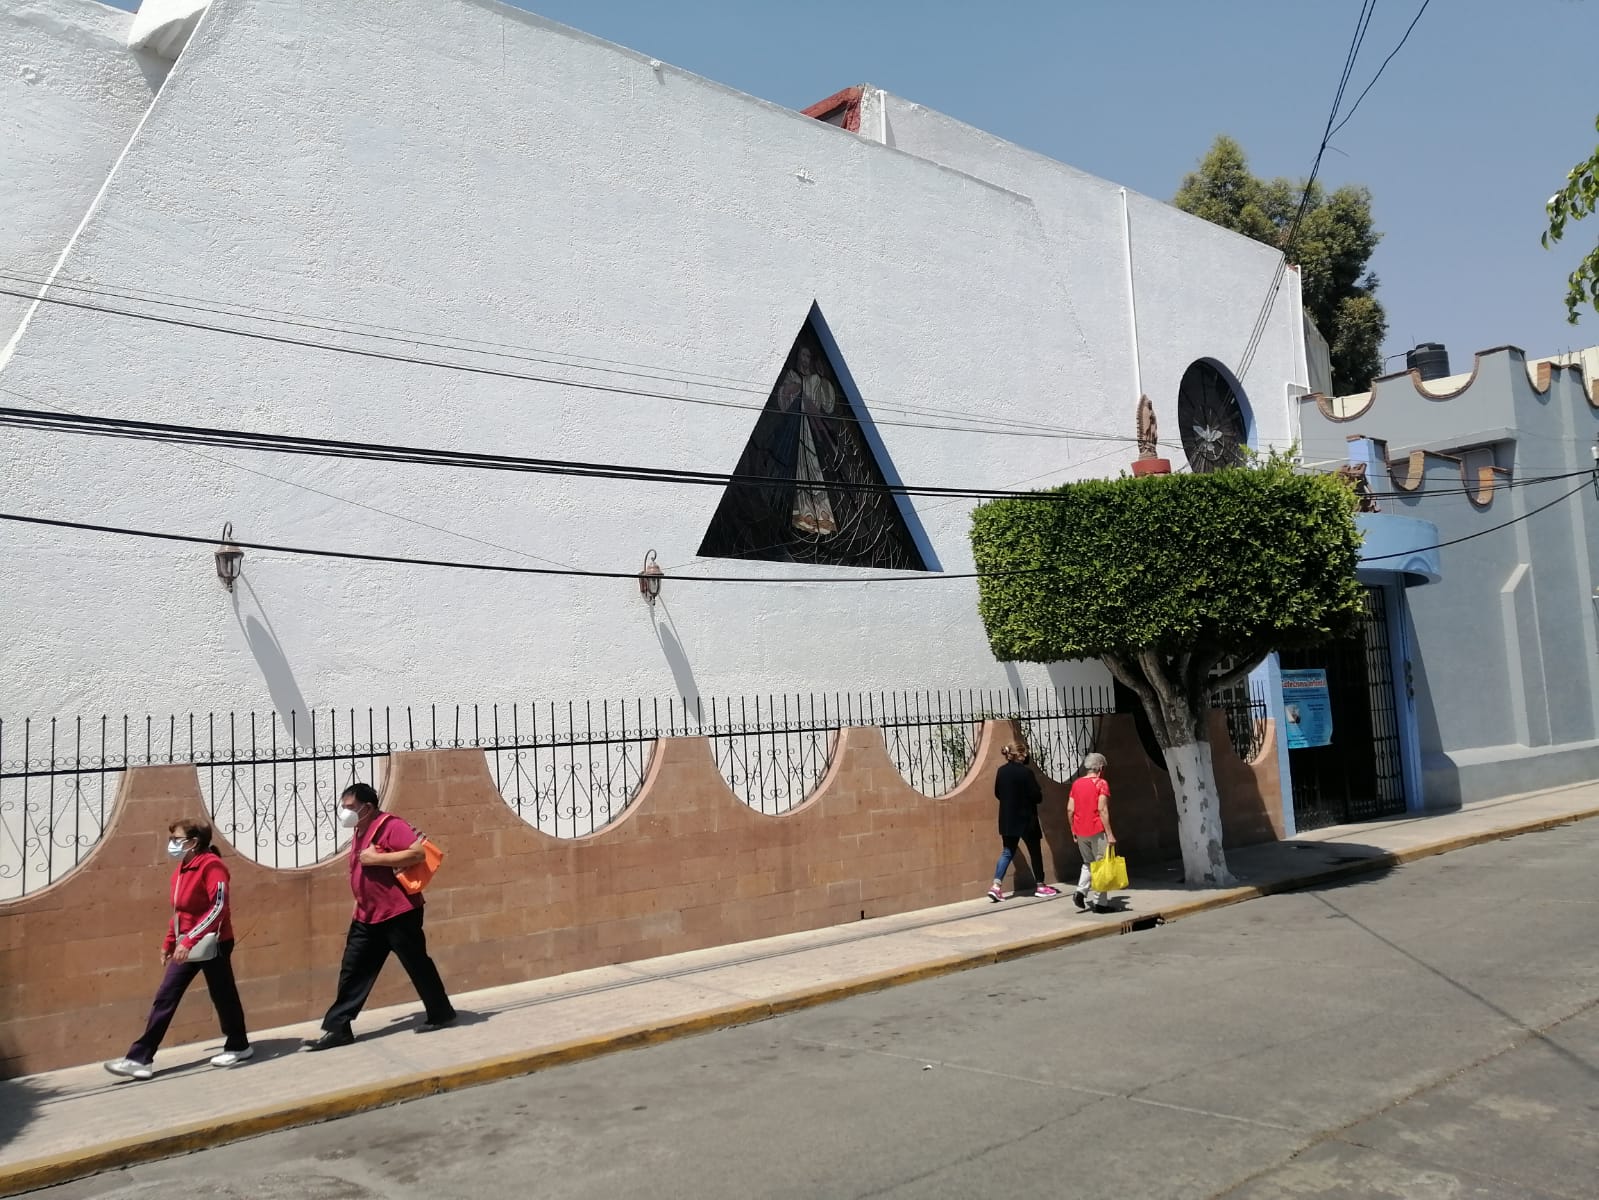 Fotografía de la iglesia Parroquia Nuestra Señora de guadalupe Reina de México